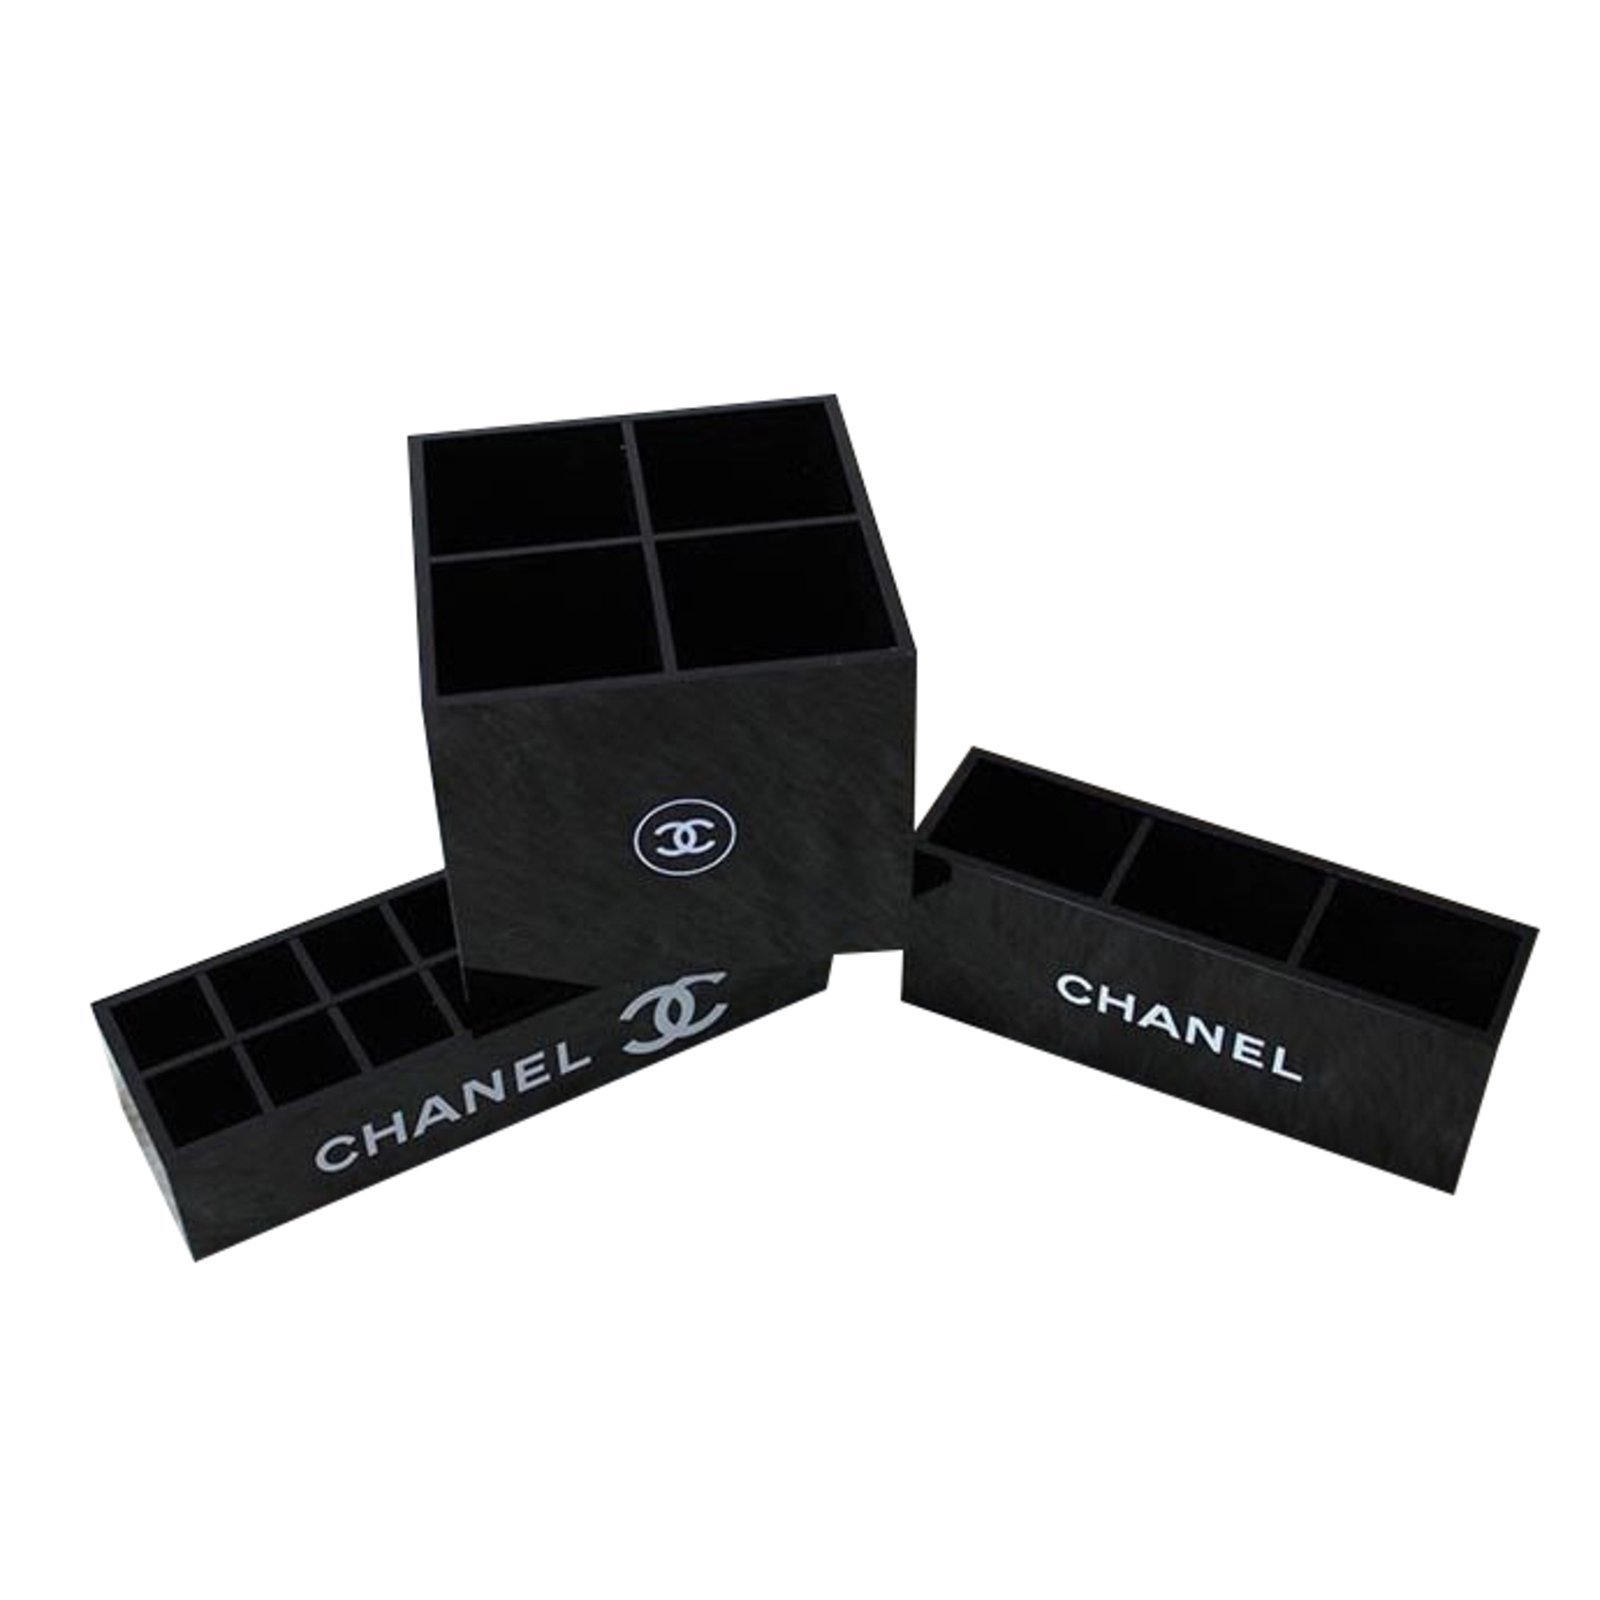 BNIB CHANEL Acrylic Makeup storage Brush Holder Vanity Organiser Box  eBay